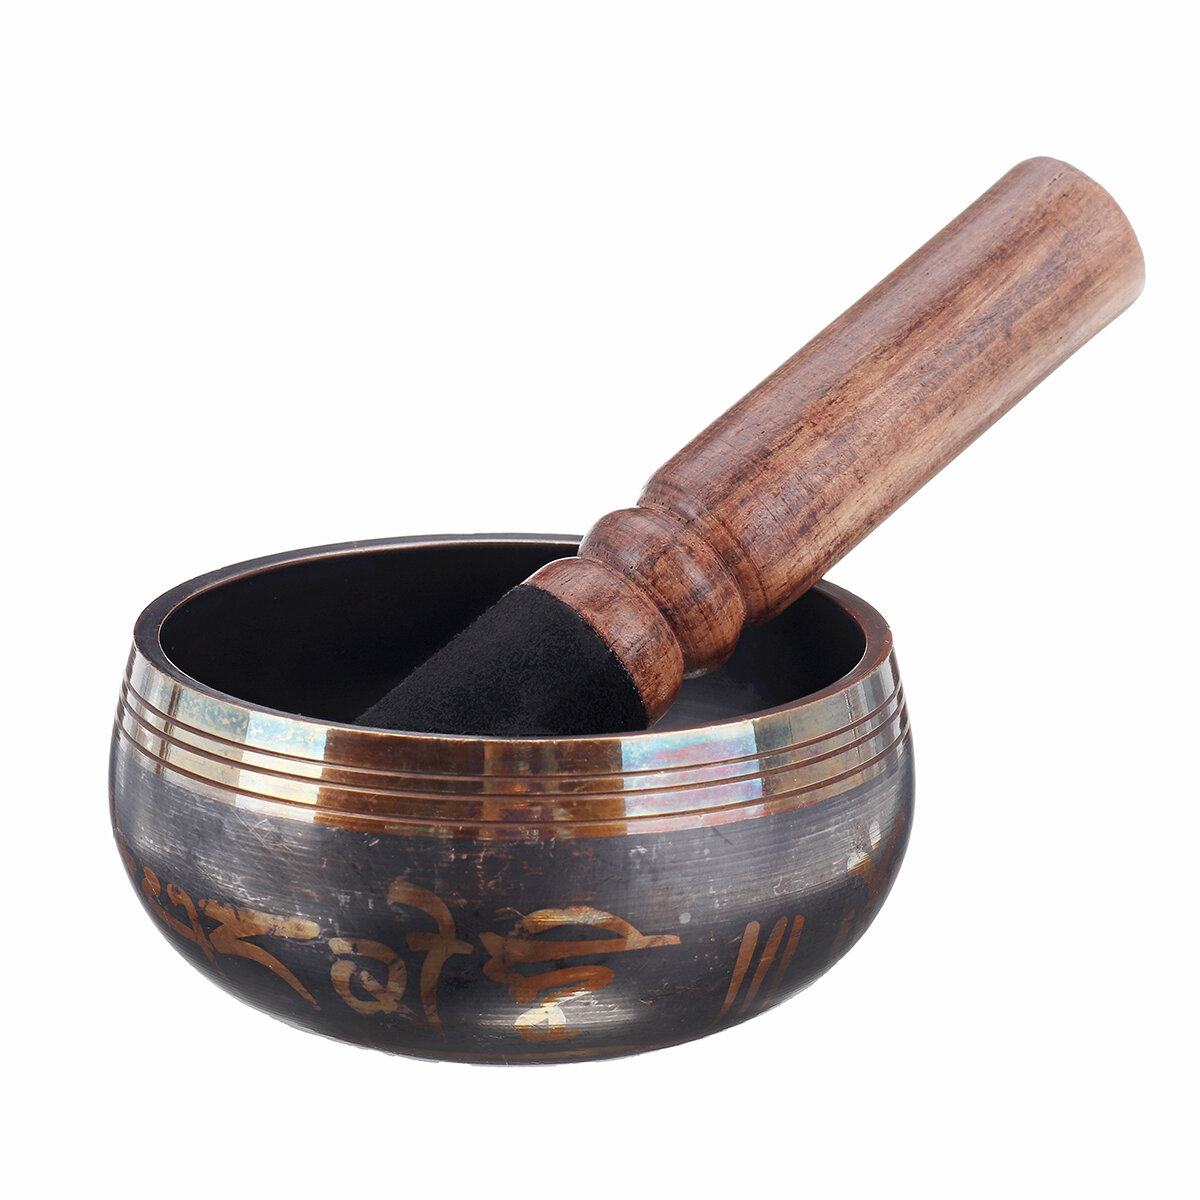 

Коврик для поющей чаши для традиционной медитации + деревянный молоток Тибетский буддизм Непал